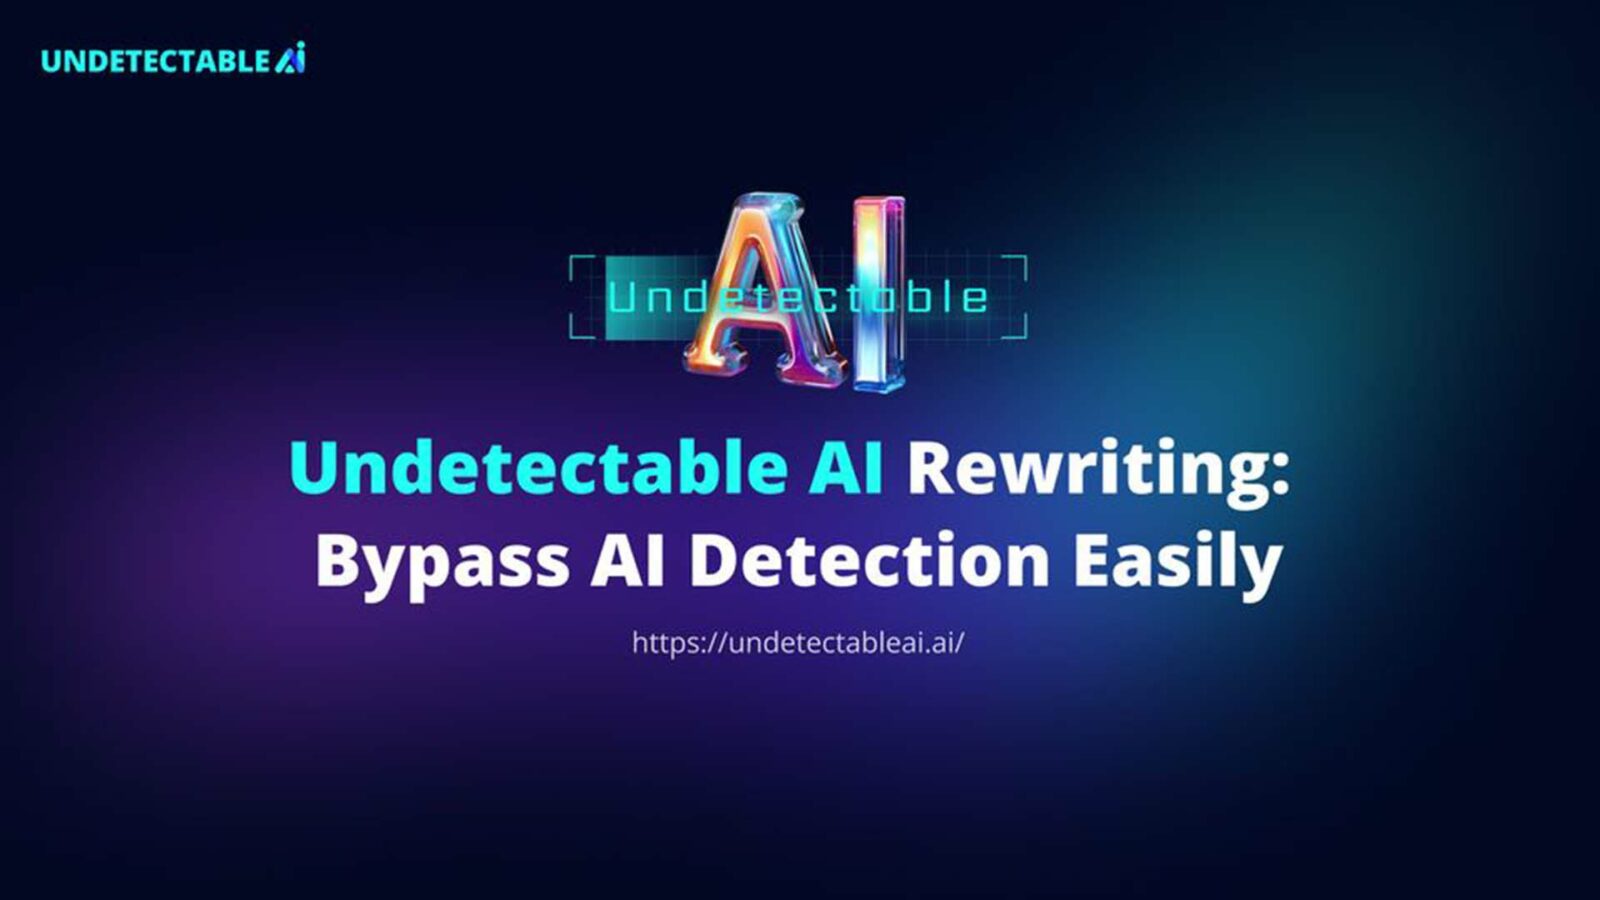 この画像には、青色の背景のウェブサイト URL の上に「検出不可能な AI 書き換え: AI 検出を簡単に回避」という文字が記載されたデジタル広告が表示されています。